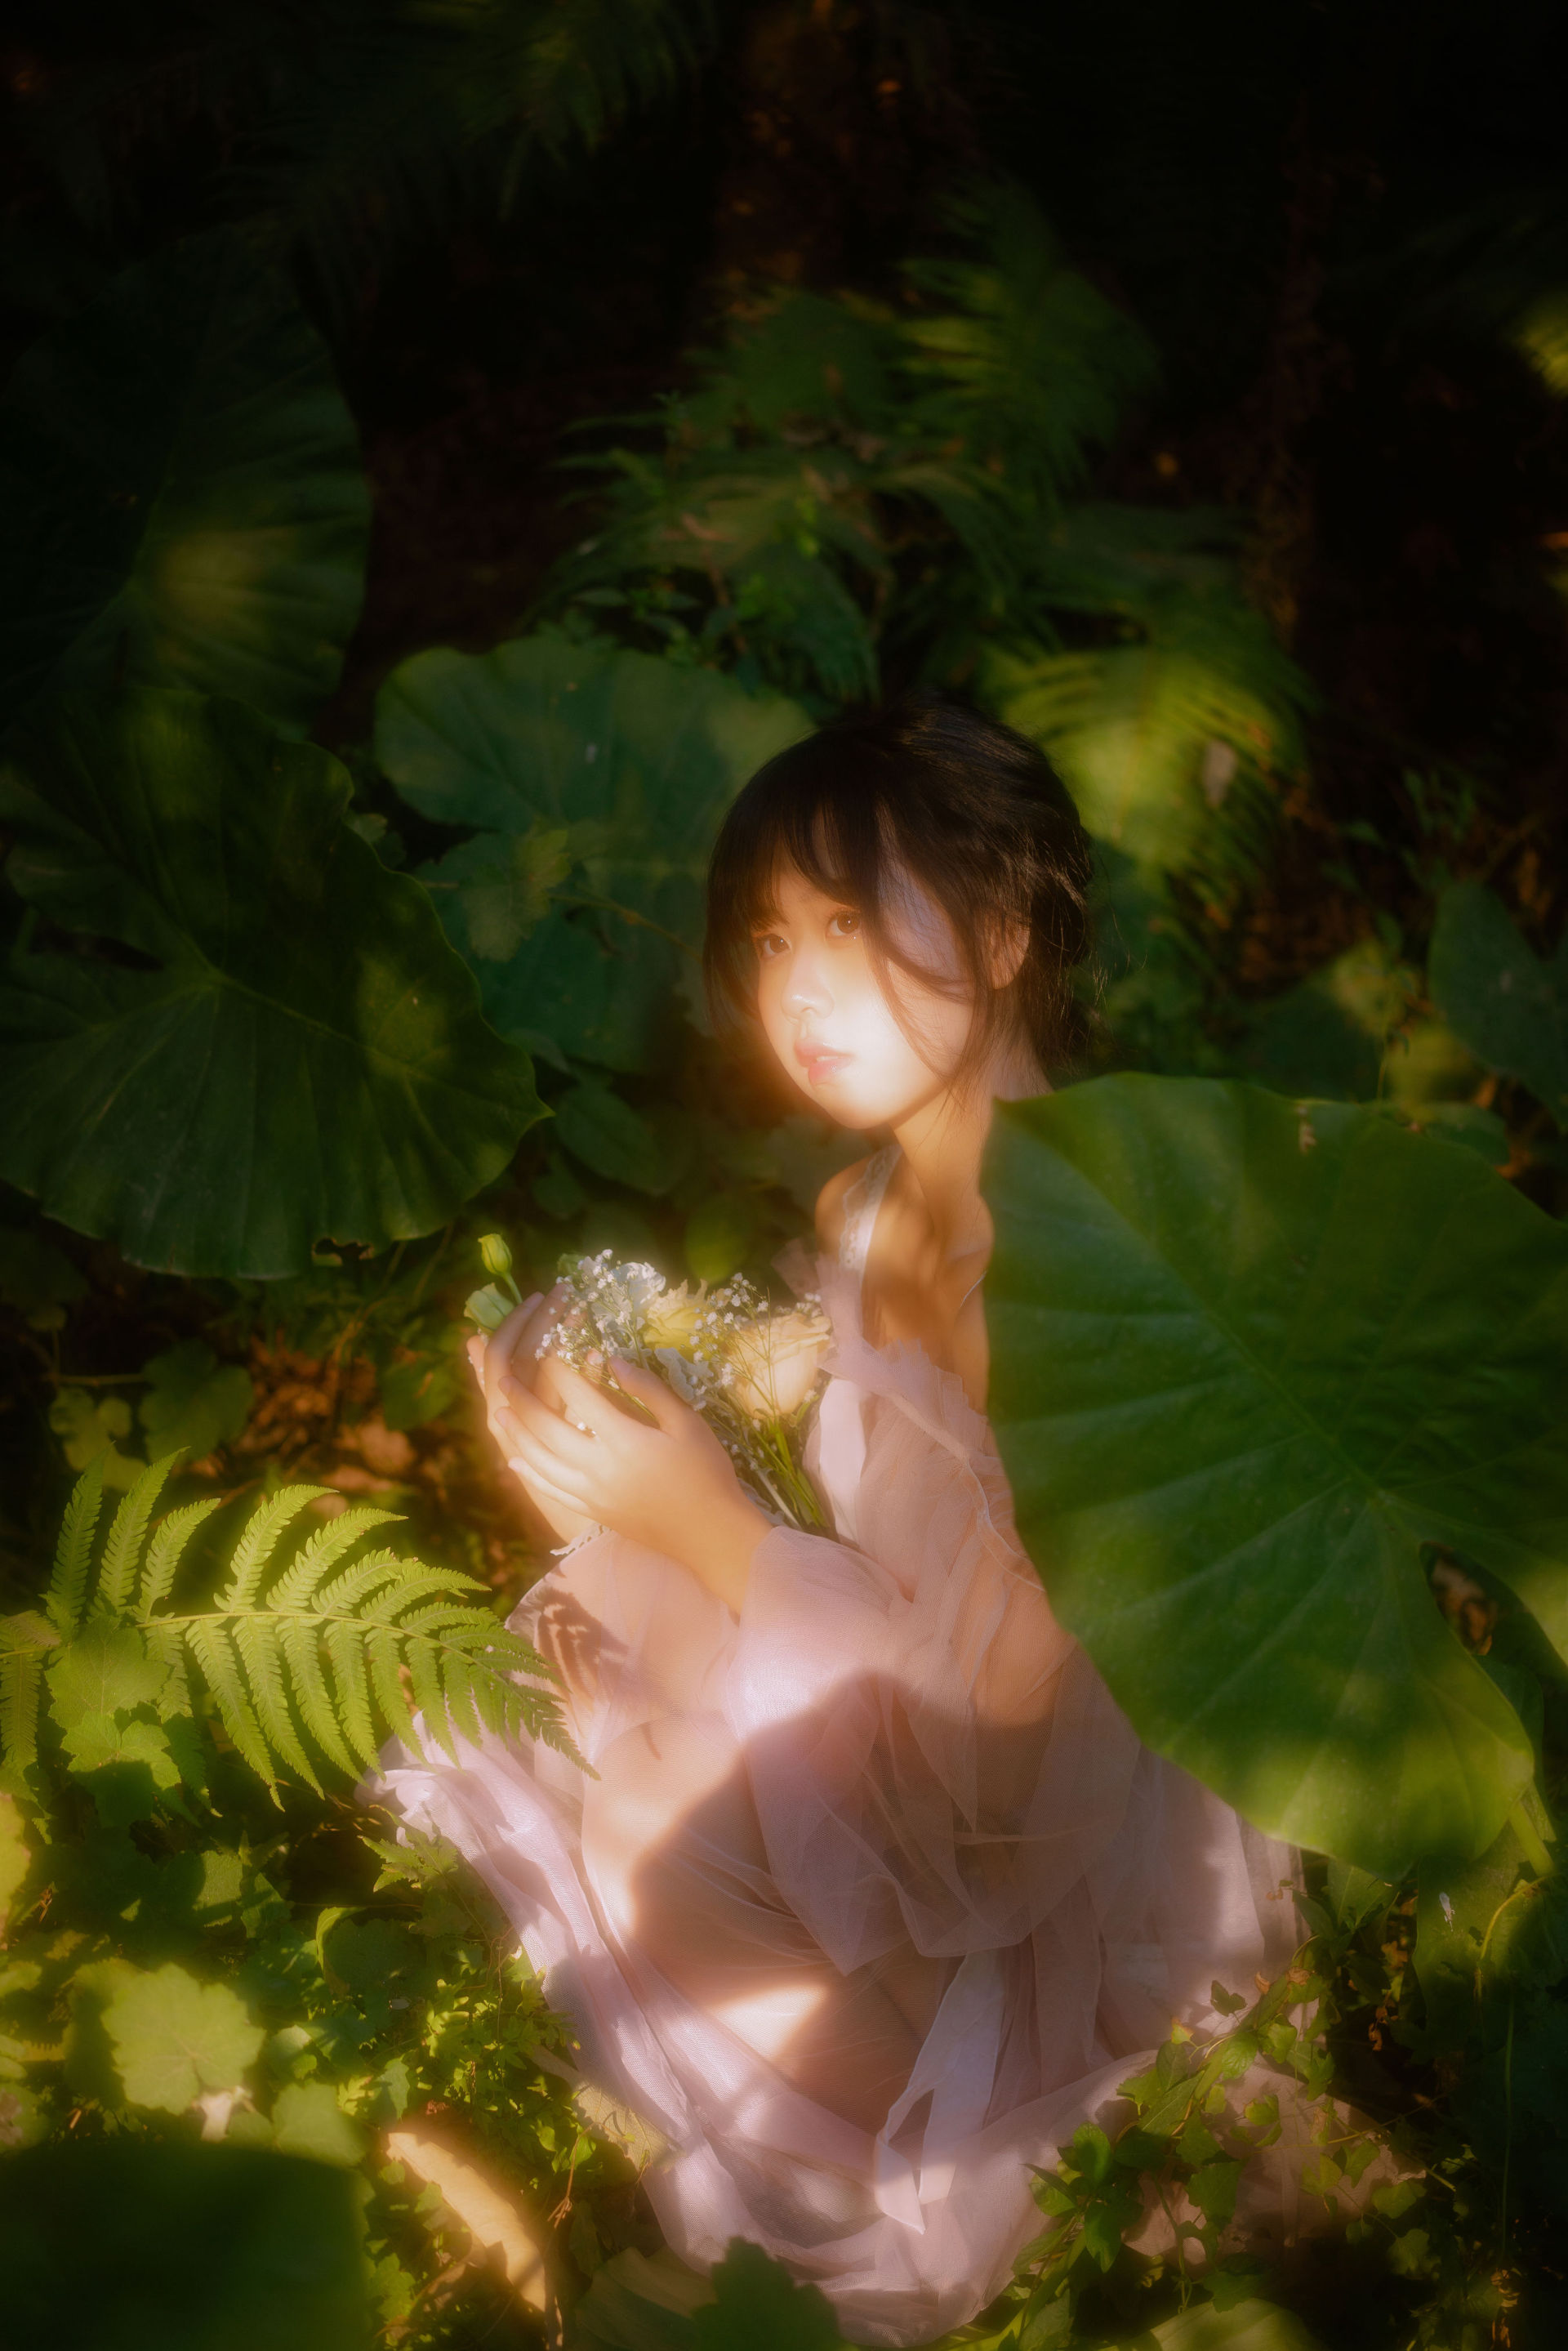 林中少女 少女 摄影 美图 惊艳 森系 树林